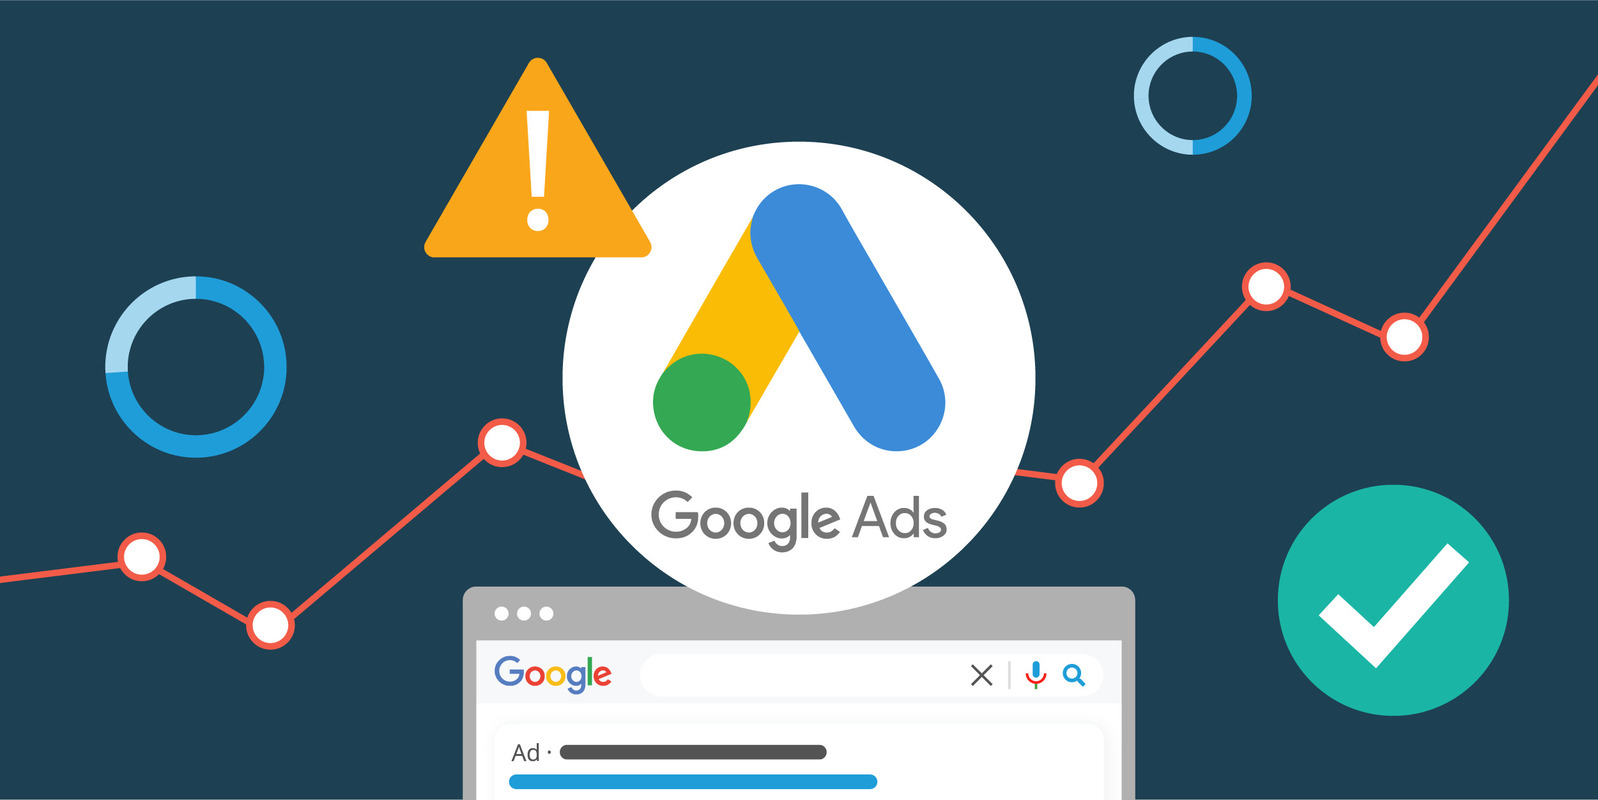 Sử dụng tài khoản quảng cáo Google Ads cho phép người dùng chạy quảng cáo trên Google